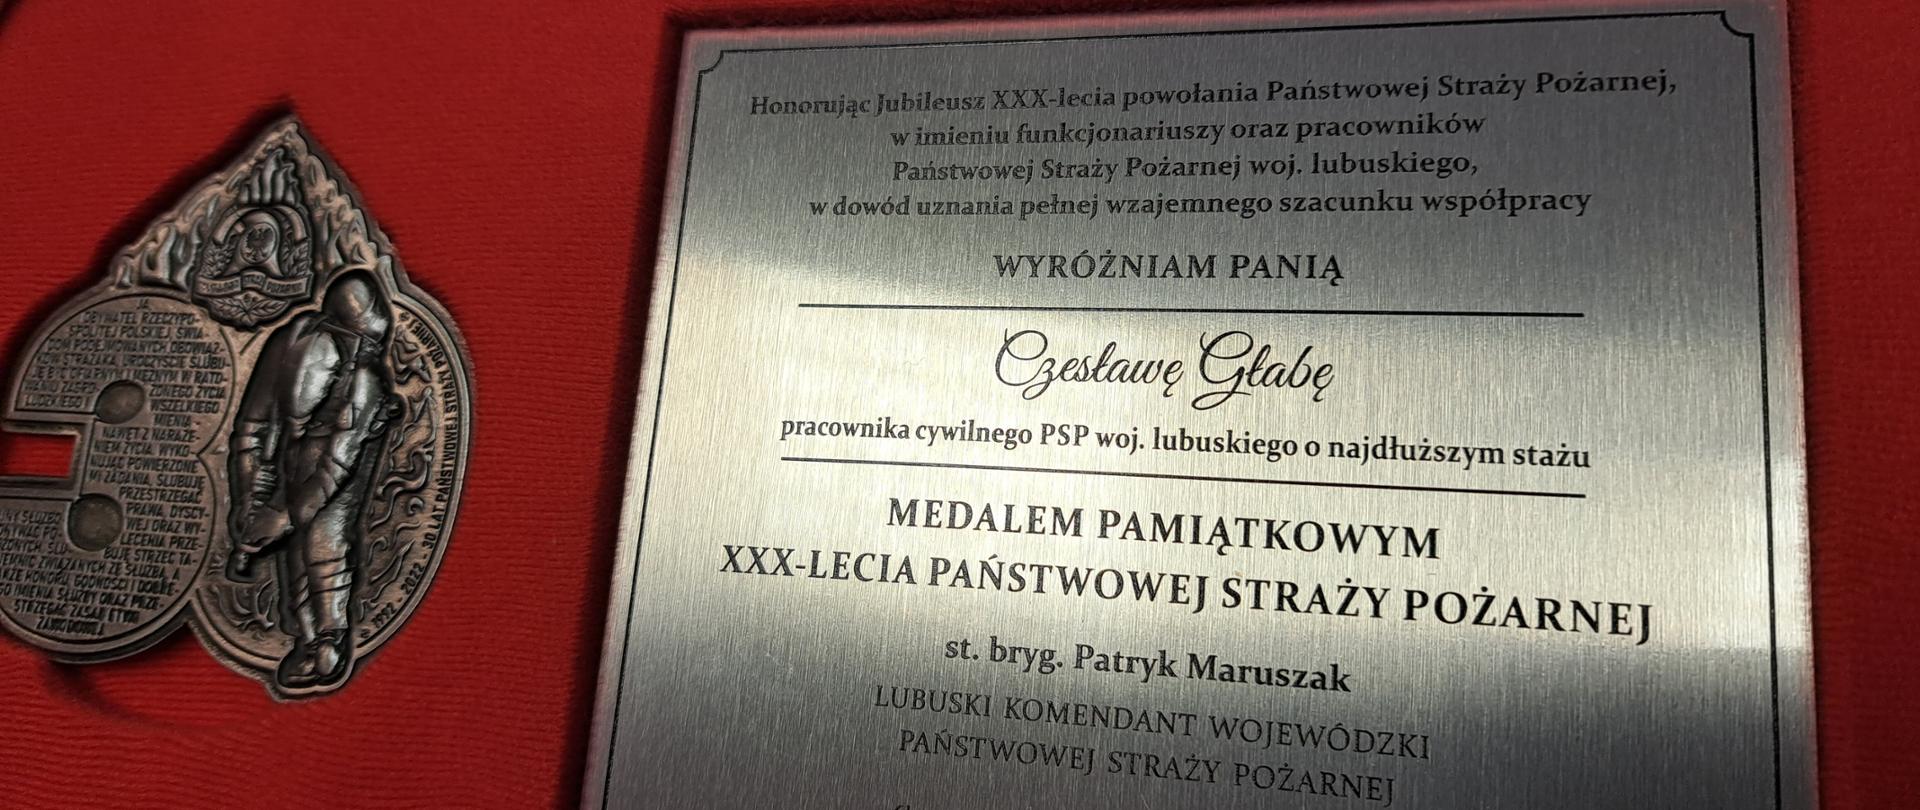 Widok tabliczki wraz z medalem pamiątkowym z okazji XXX-lecia PSP.